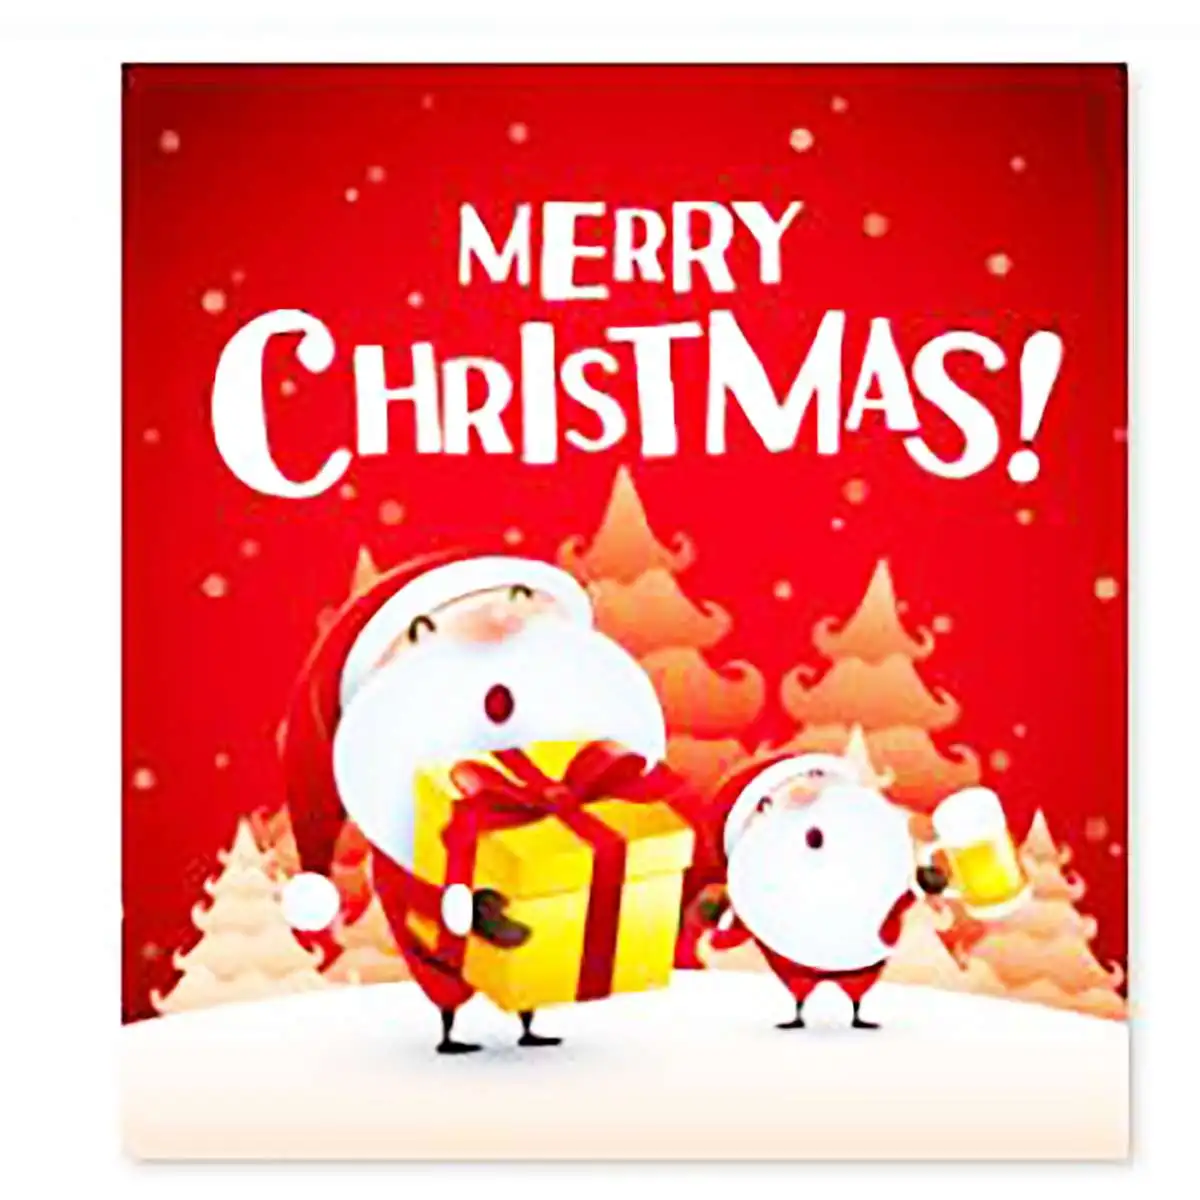 Merry Christmas, водонепроницаемая занавеска для ванной, Рождественский Санта Клаус, коврик для ванной, крышка для унитаза, полиэстер/фланелевая занавеска для душа - Цвет: Type 4